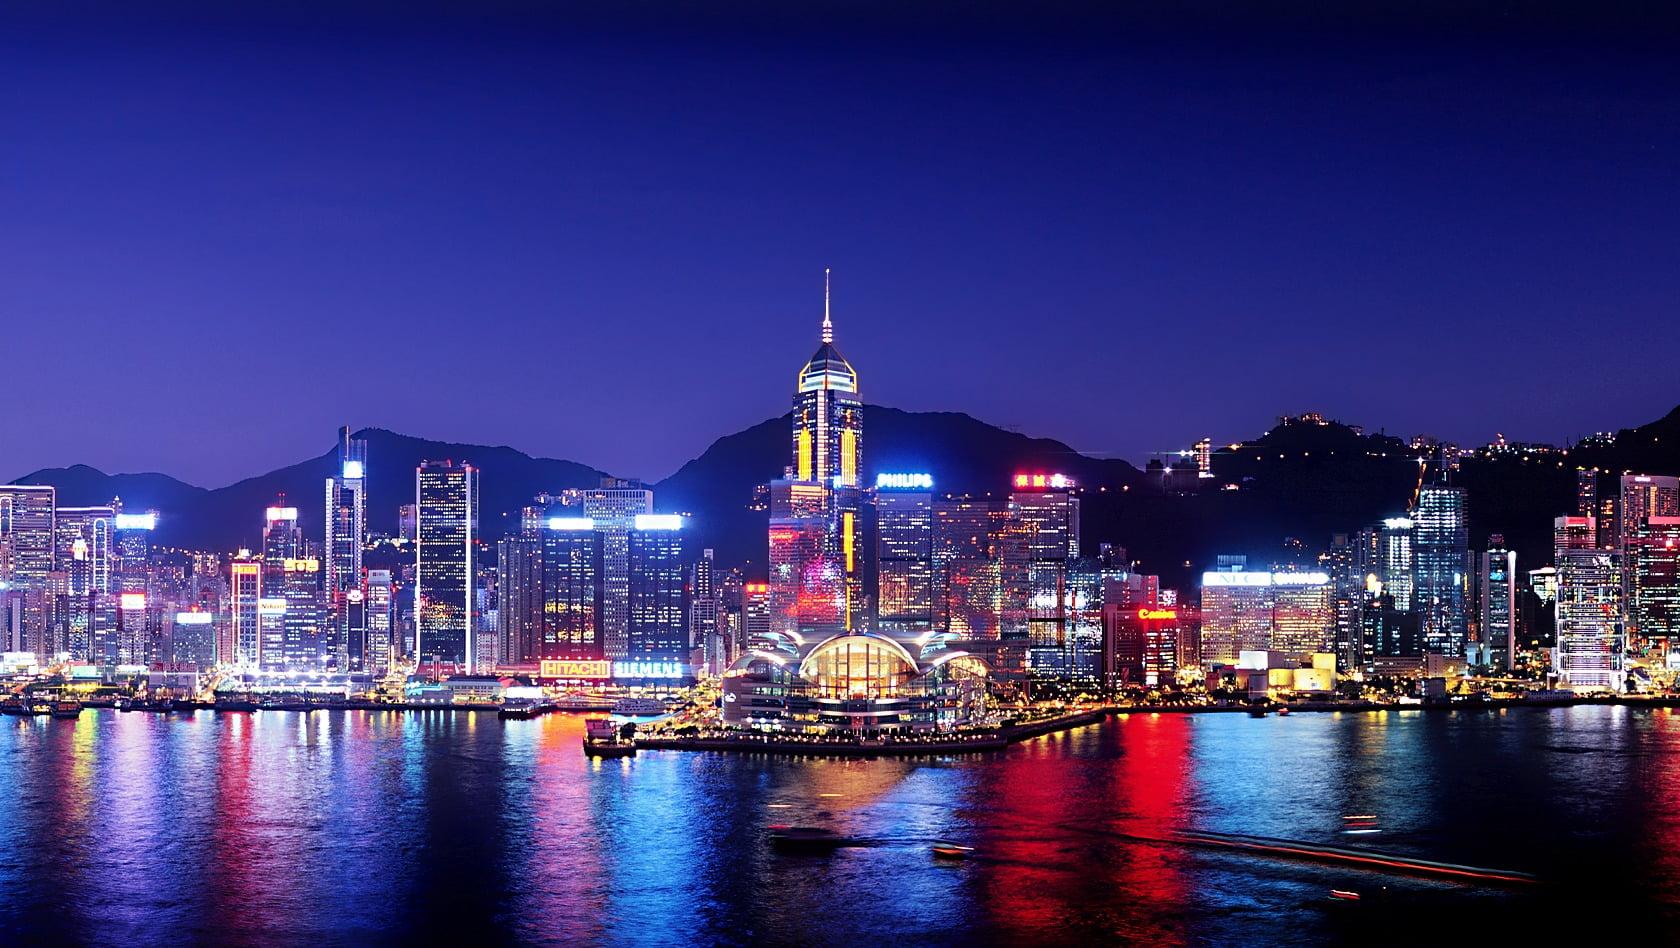 HD wallpaper: city buildings at night, cityscape, Hong Kong, harbor